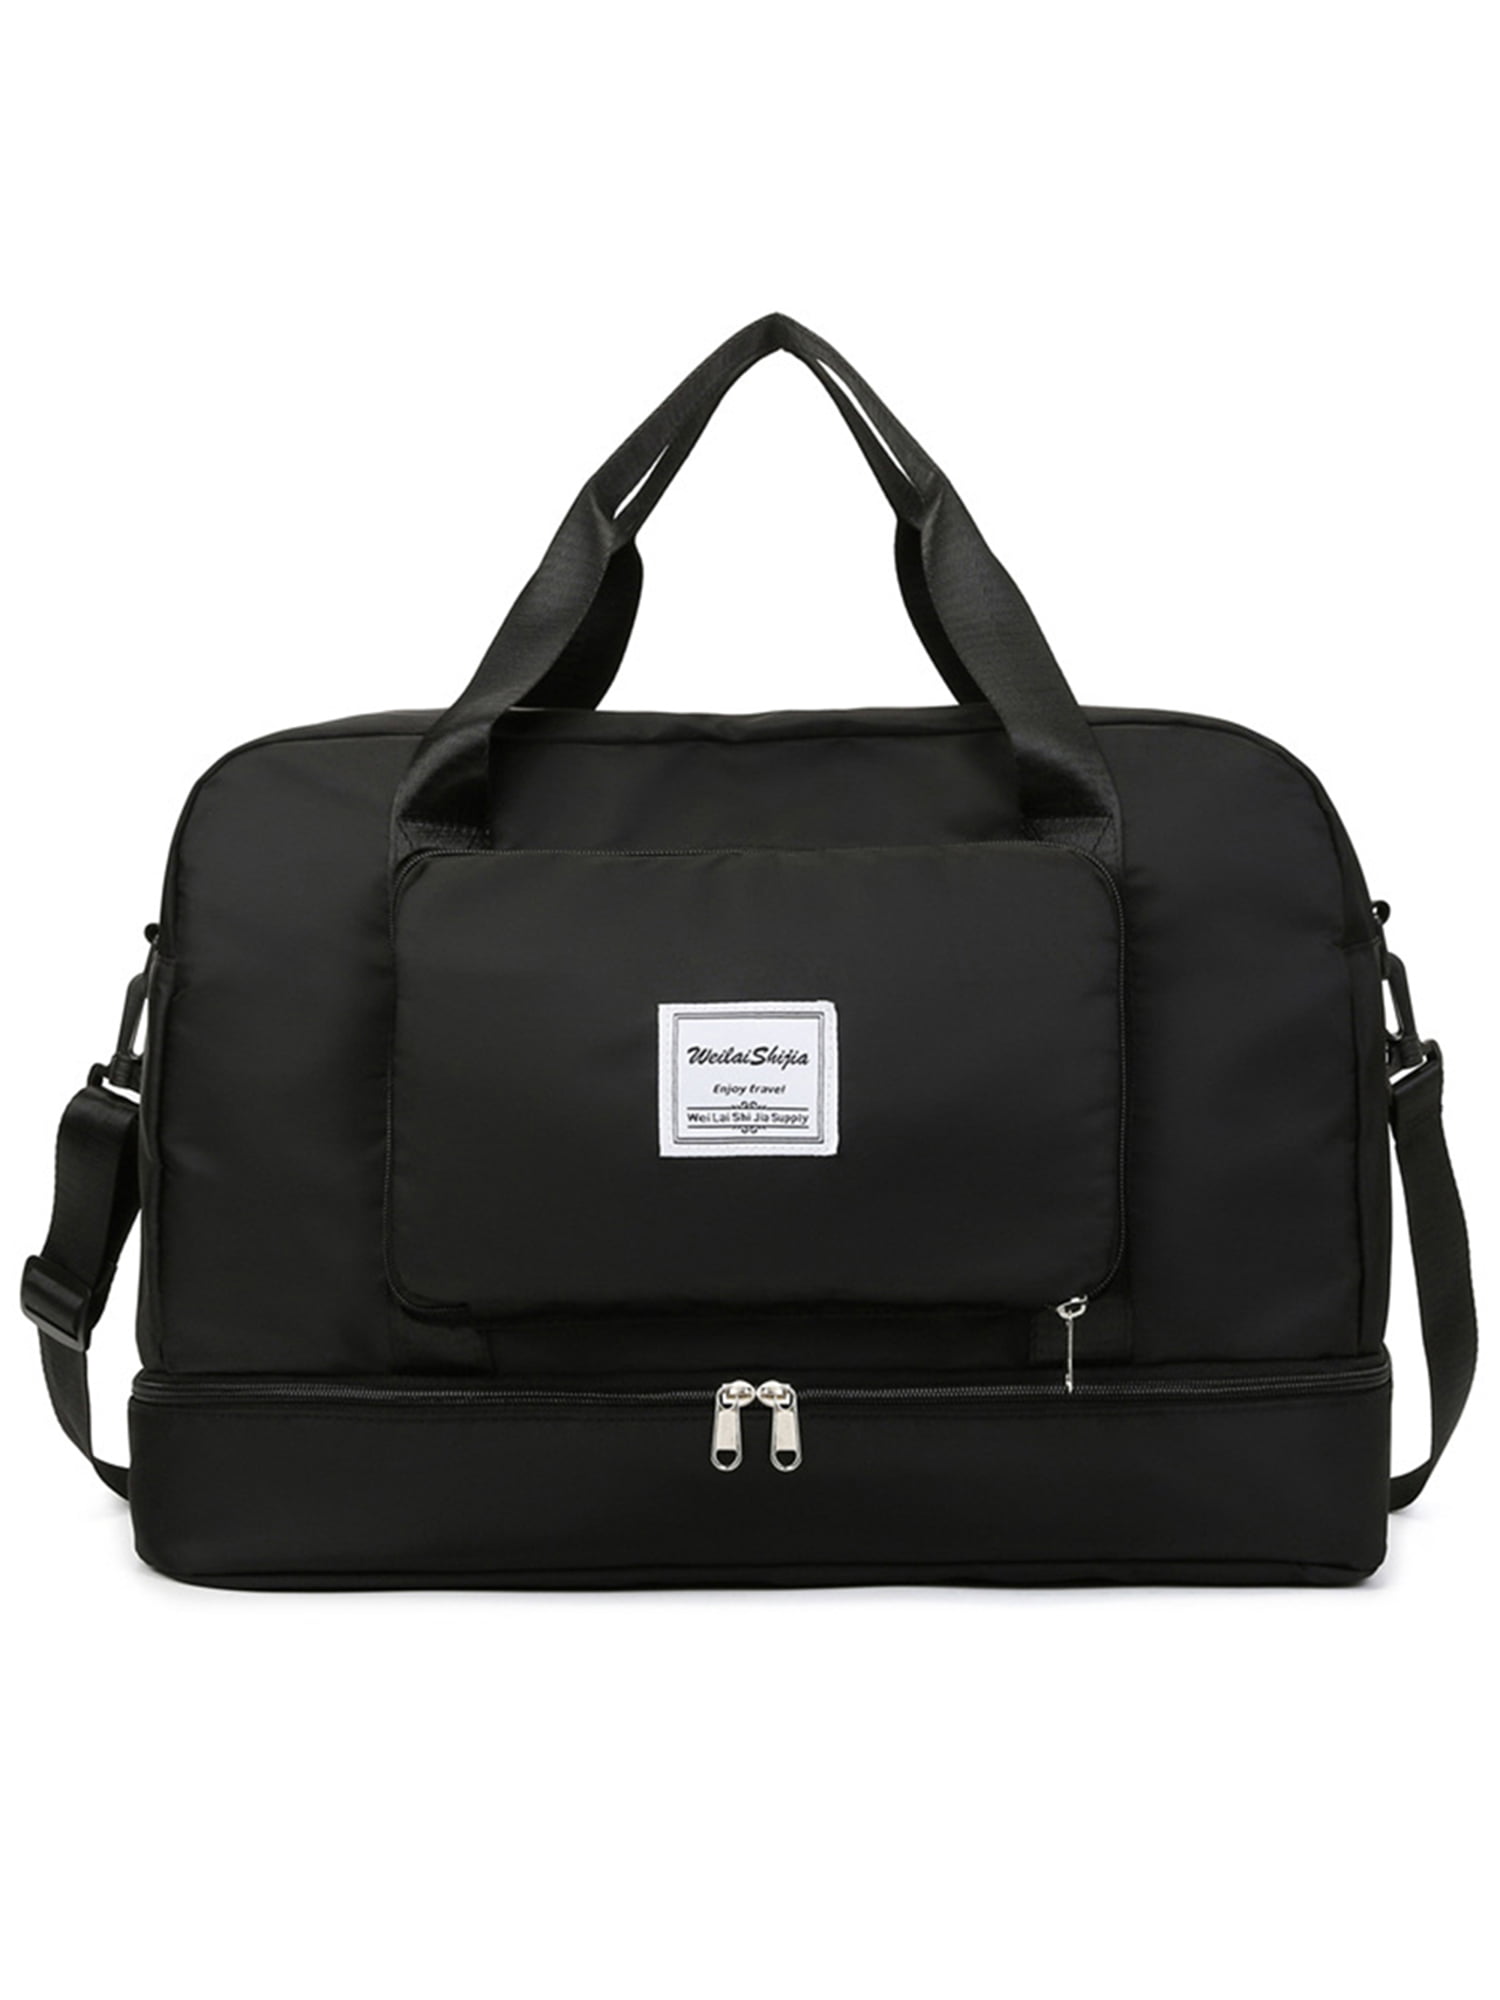 Voguele Women Travel Duffel Bag Large Capacity Weekender Luggage Top ...